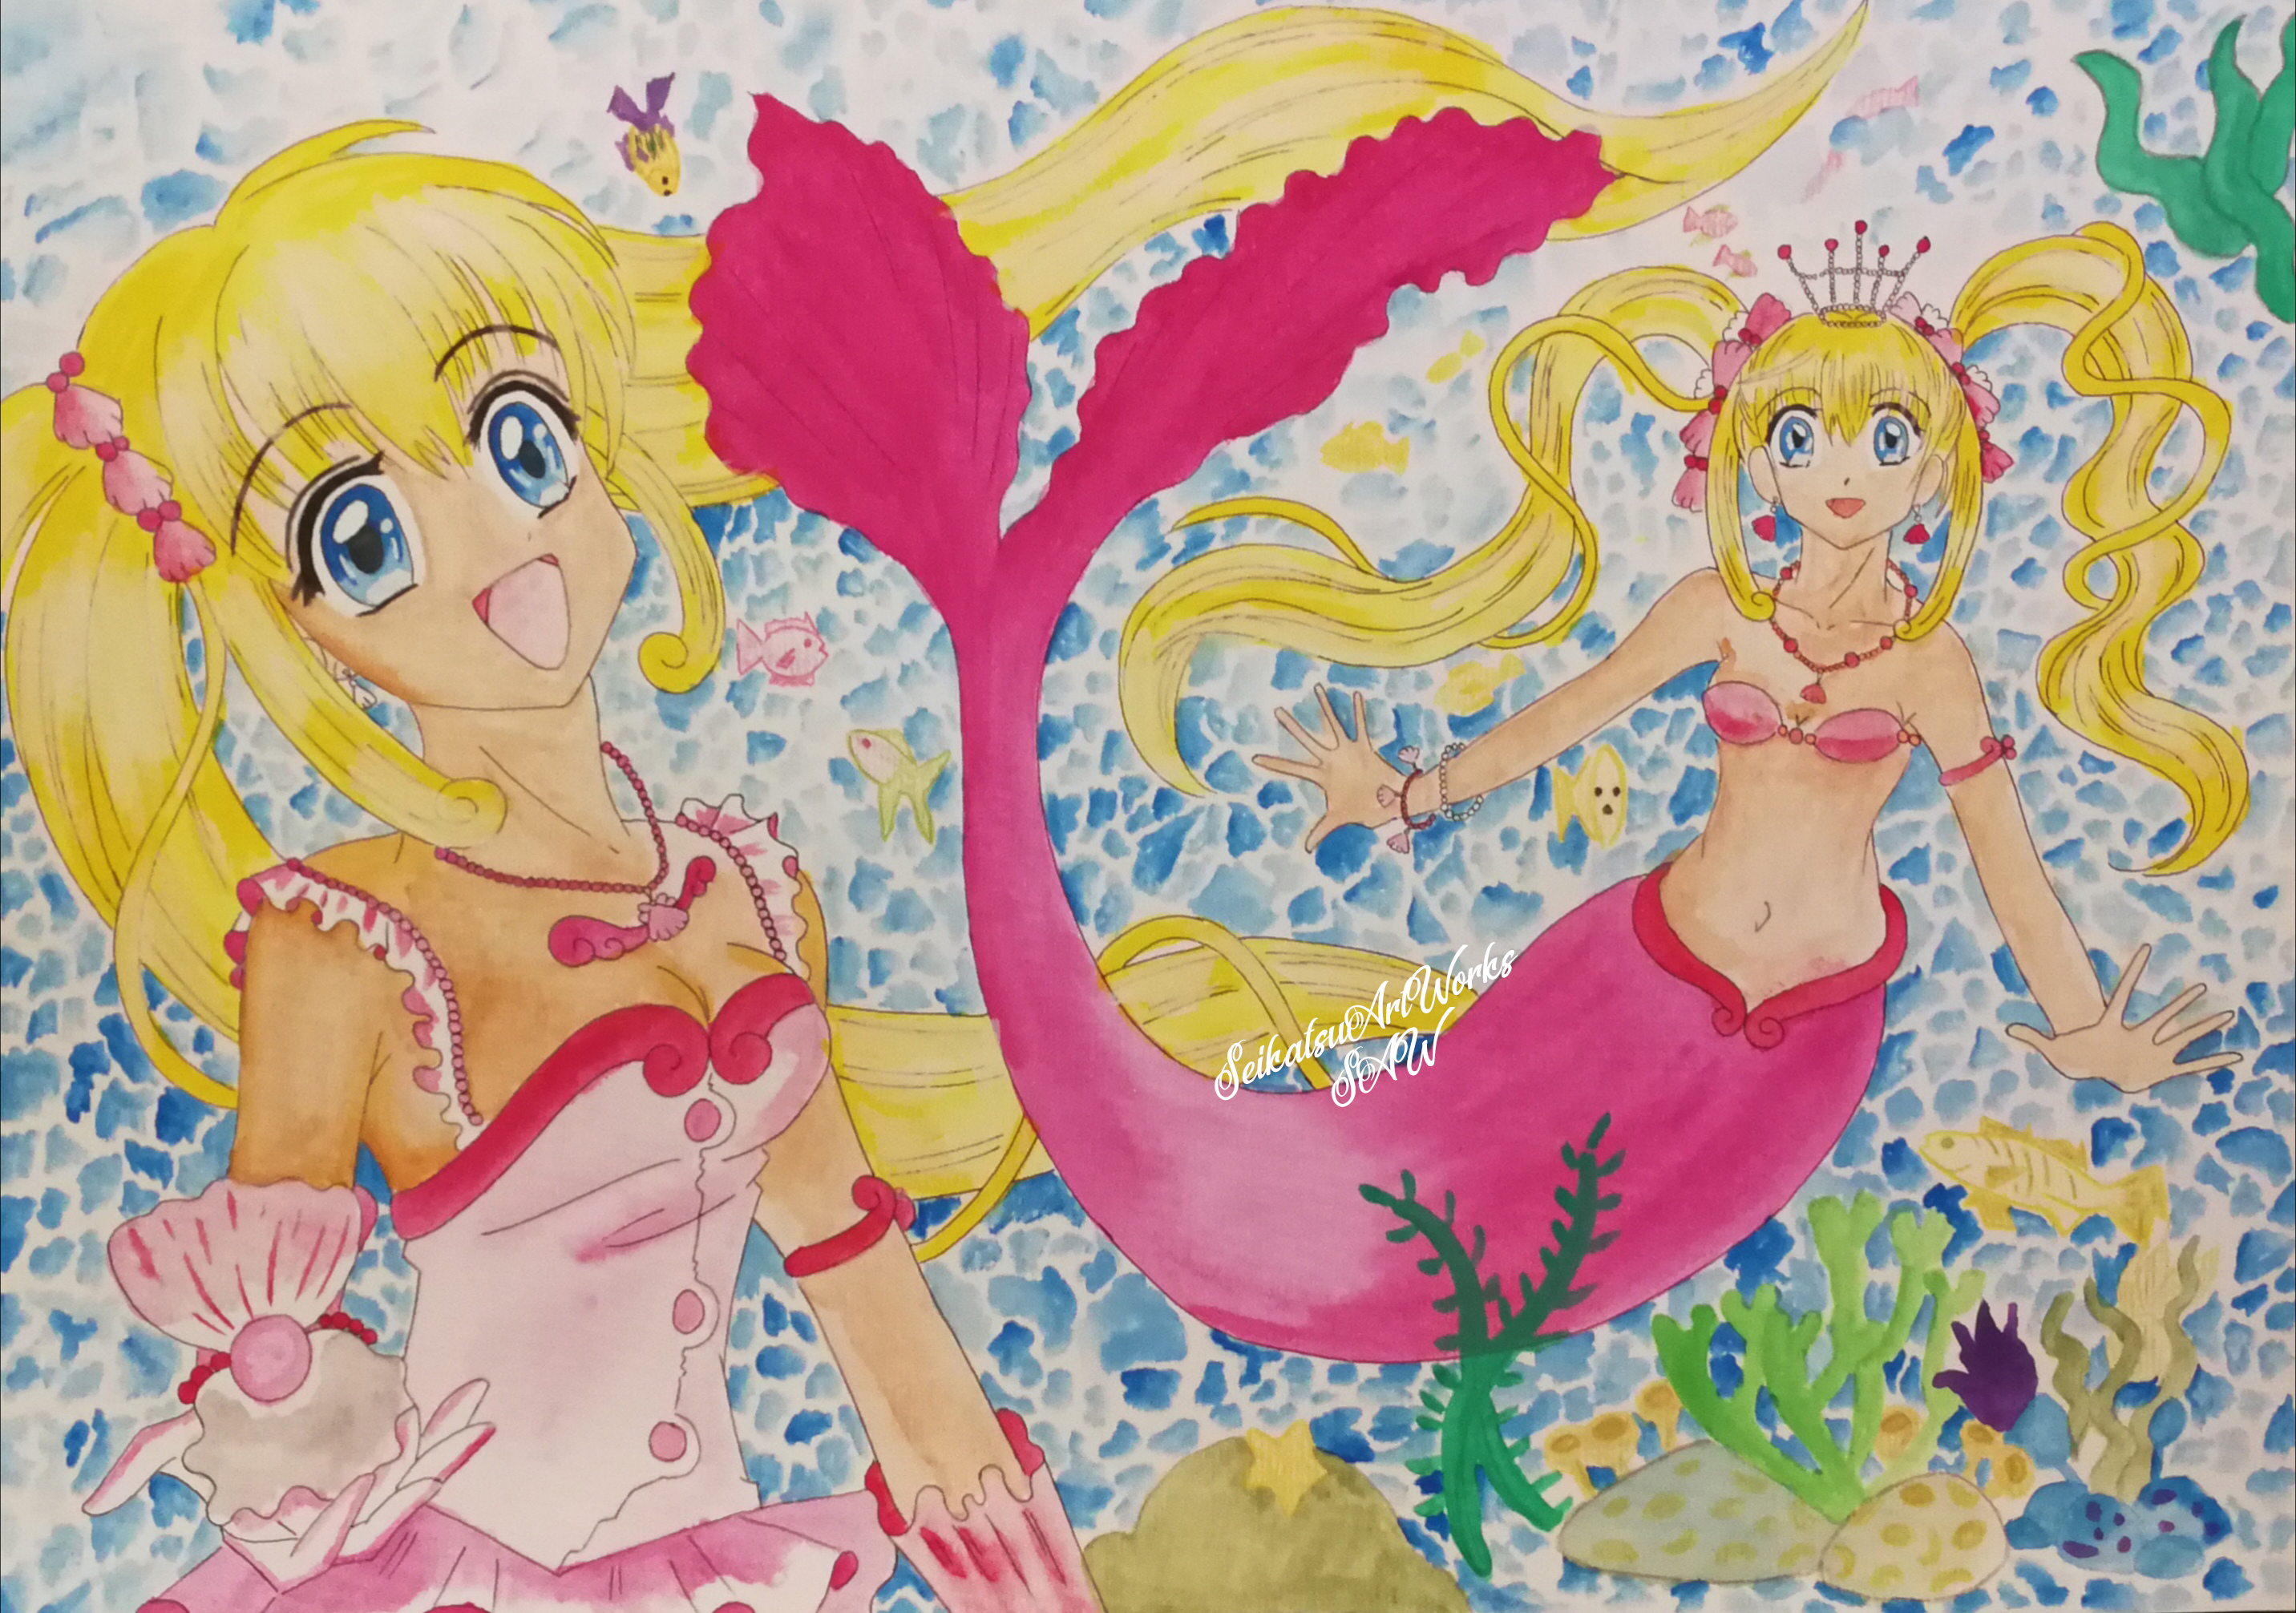 Mermaid Melody Luchia Nanami Manga Vol 1 Backside by